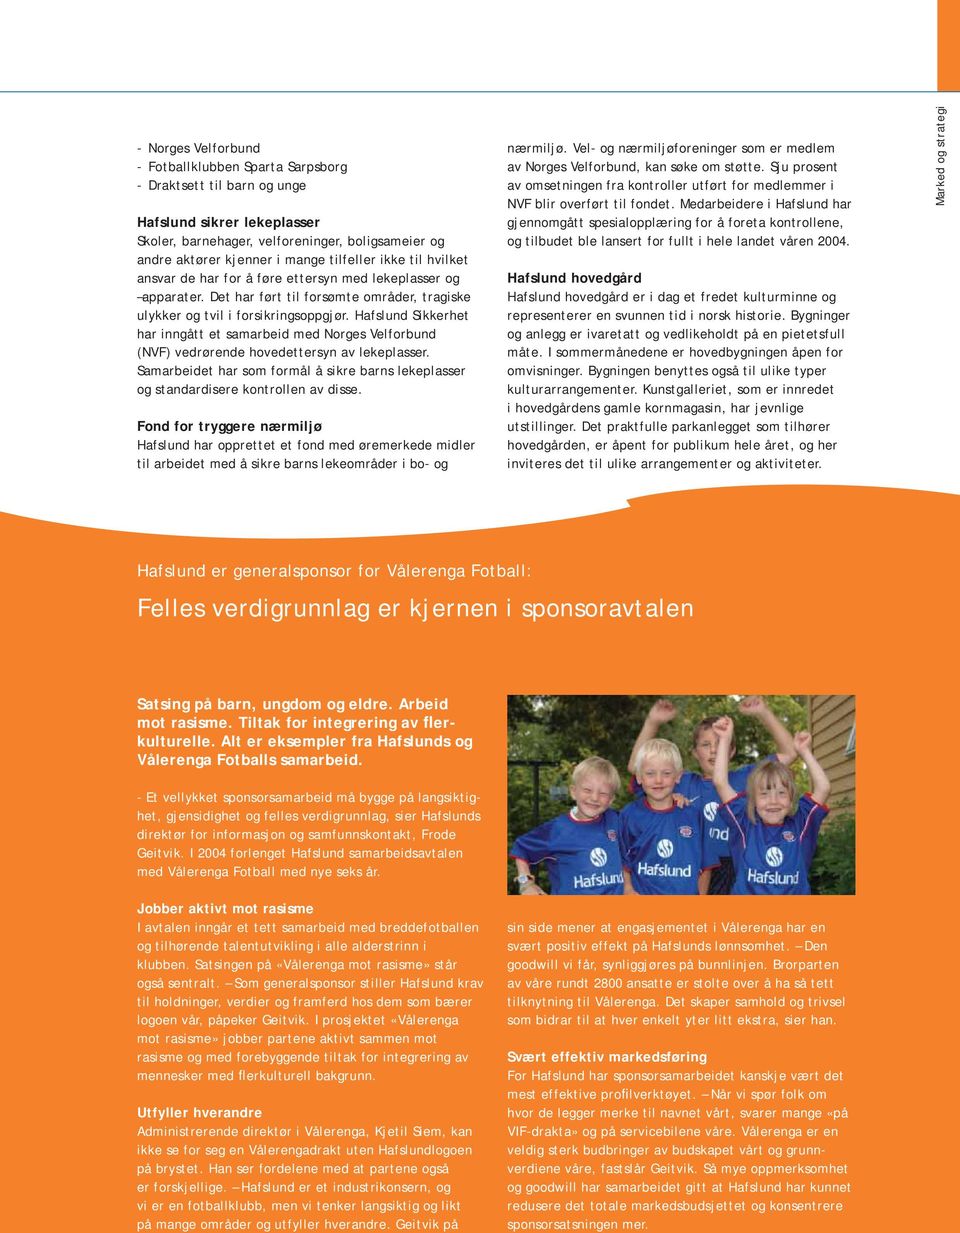 Hafslund Sikkerhet har inngått et samarbeid med Norges Velforbund (NVF) vedrørende hoved ettersyn av lekeplasser.